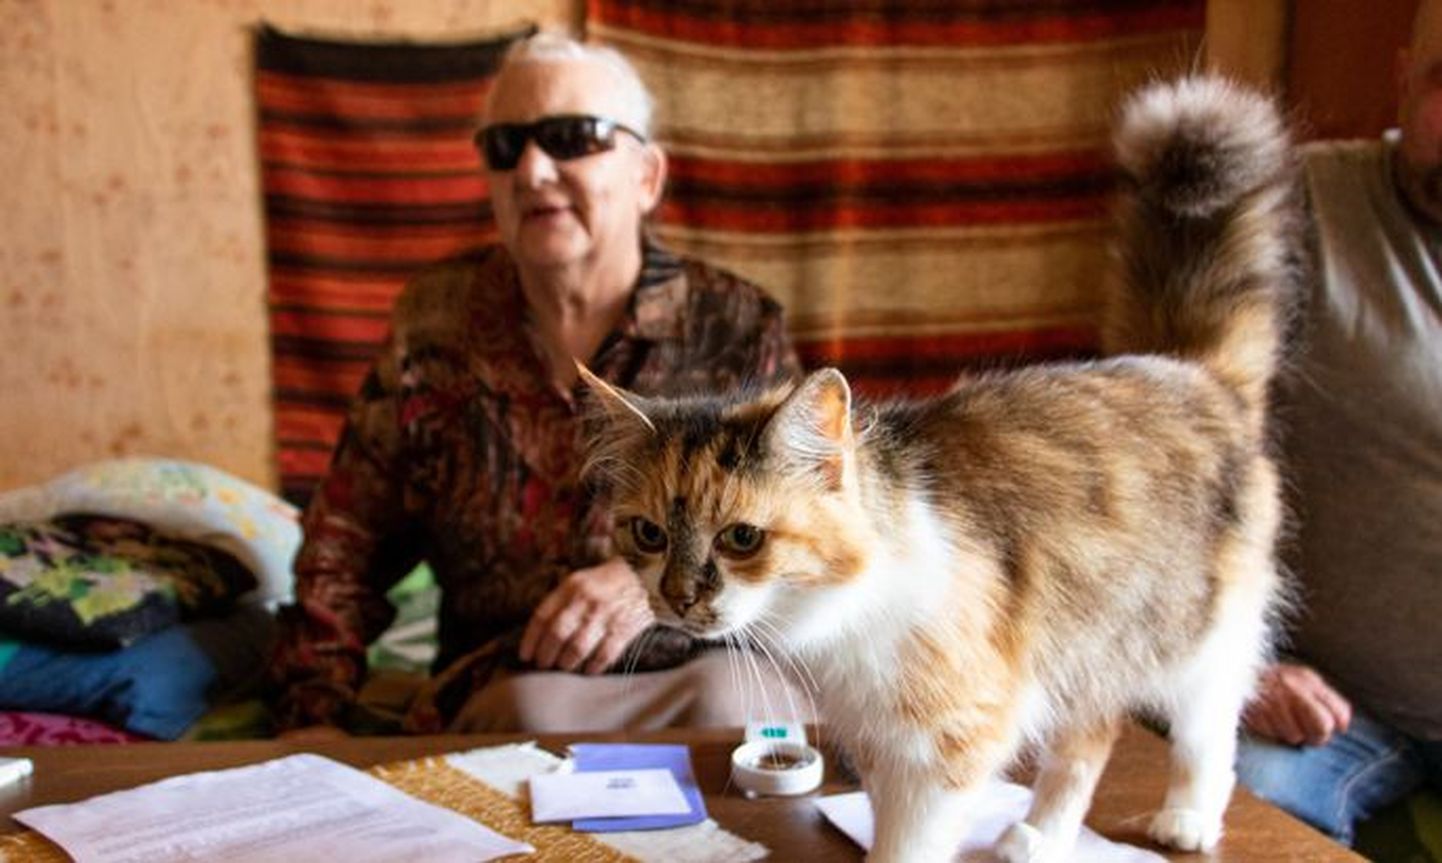 У 83-летней Майму Парм кардиостимулятор и серьезные проблемы со зрением, но после принудительного изменения личного кода ей стало сложно выписывать и выкупать лекарства, не говоря уже о попадании на прием к врачу.